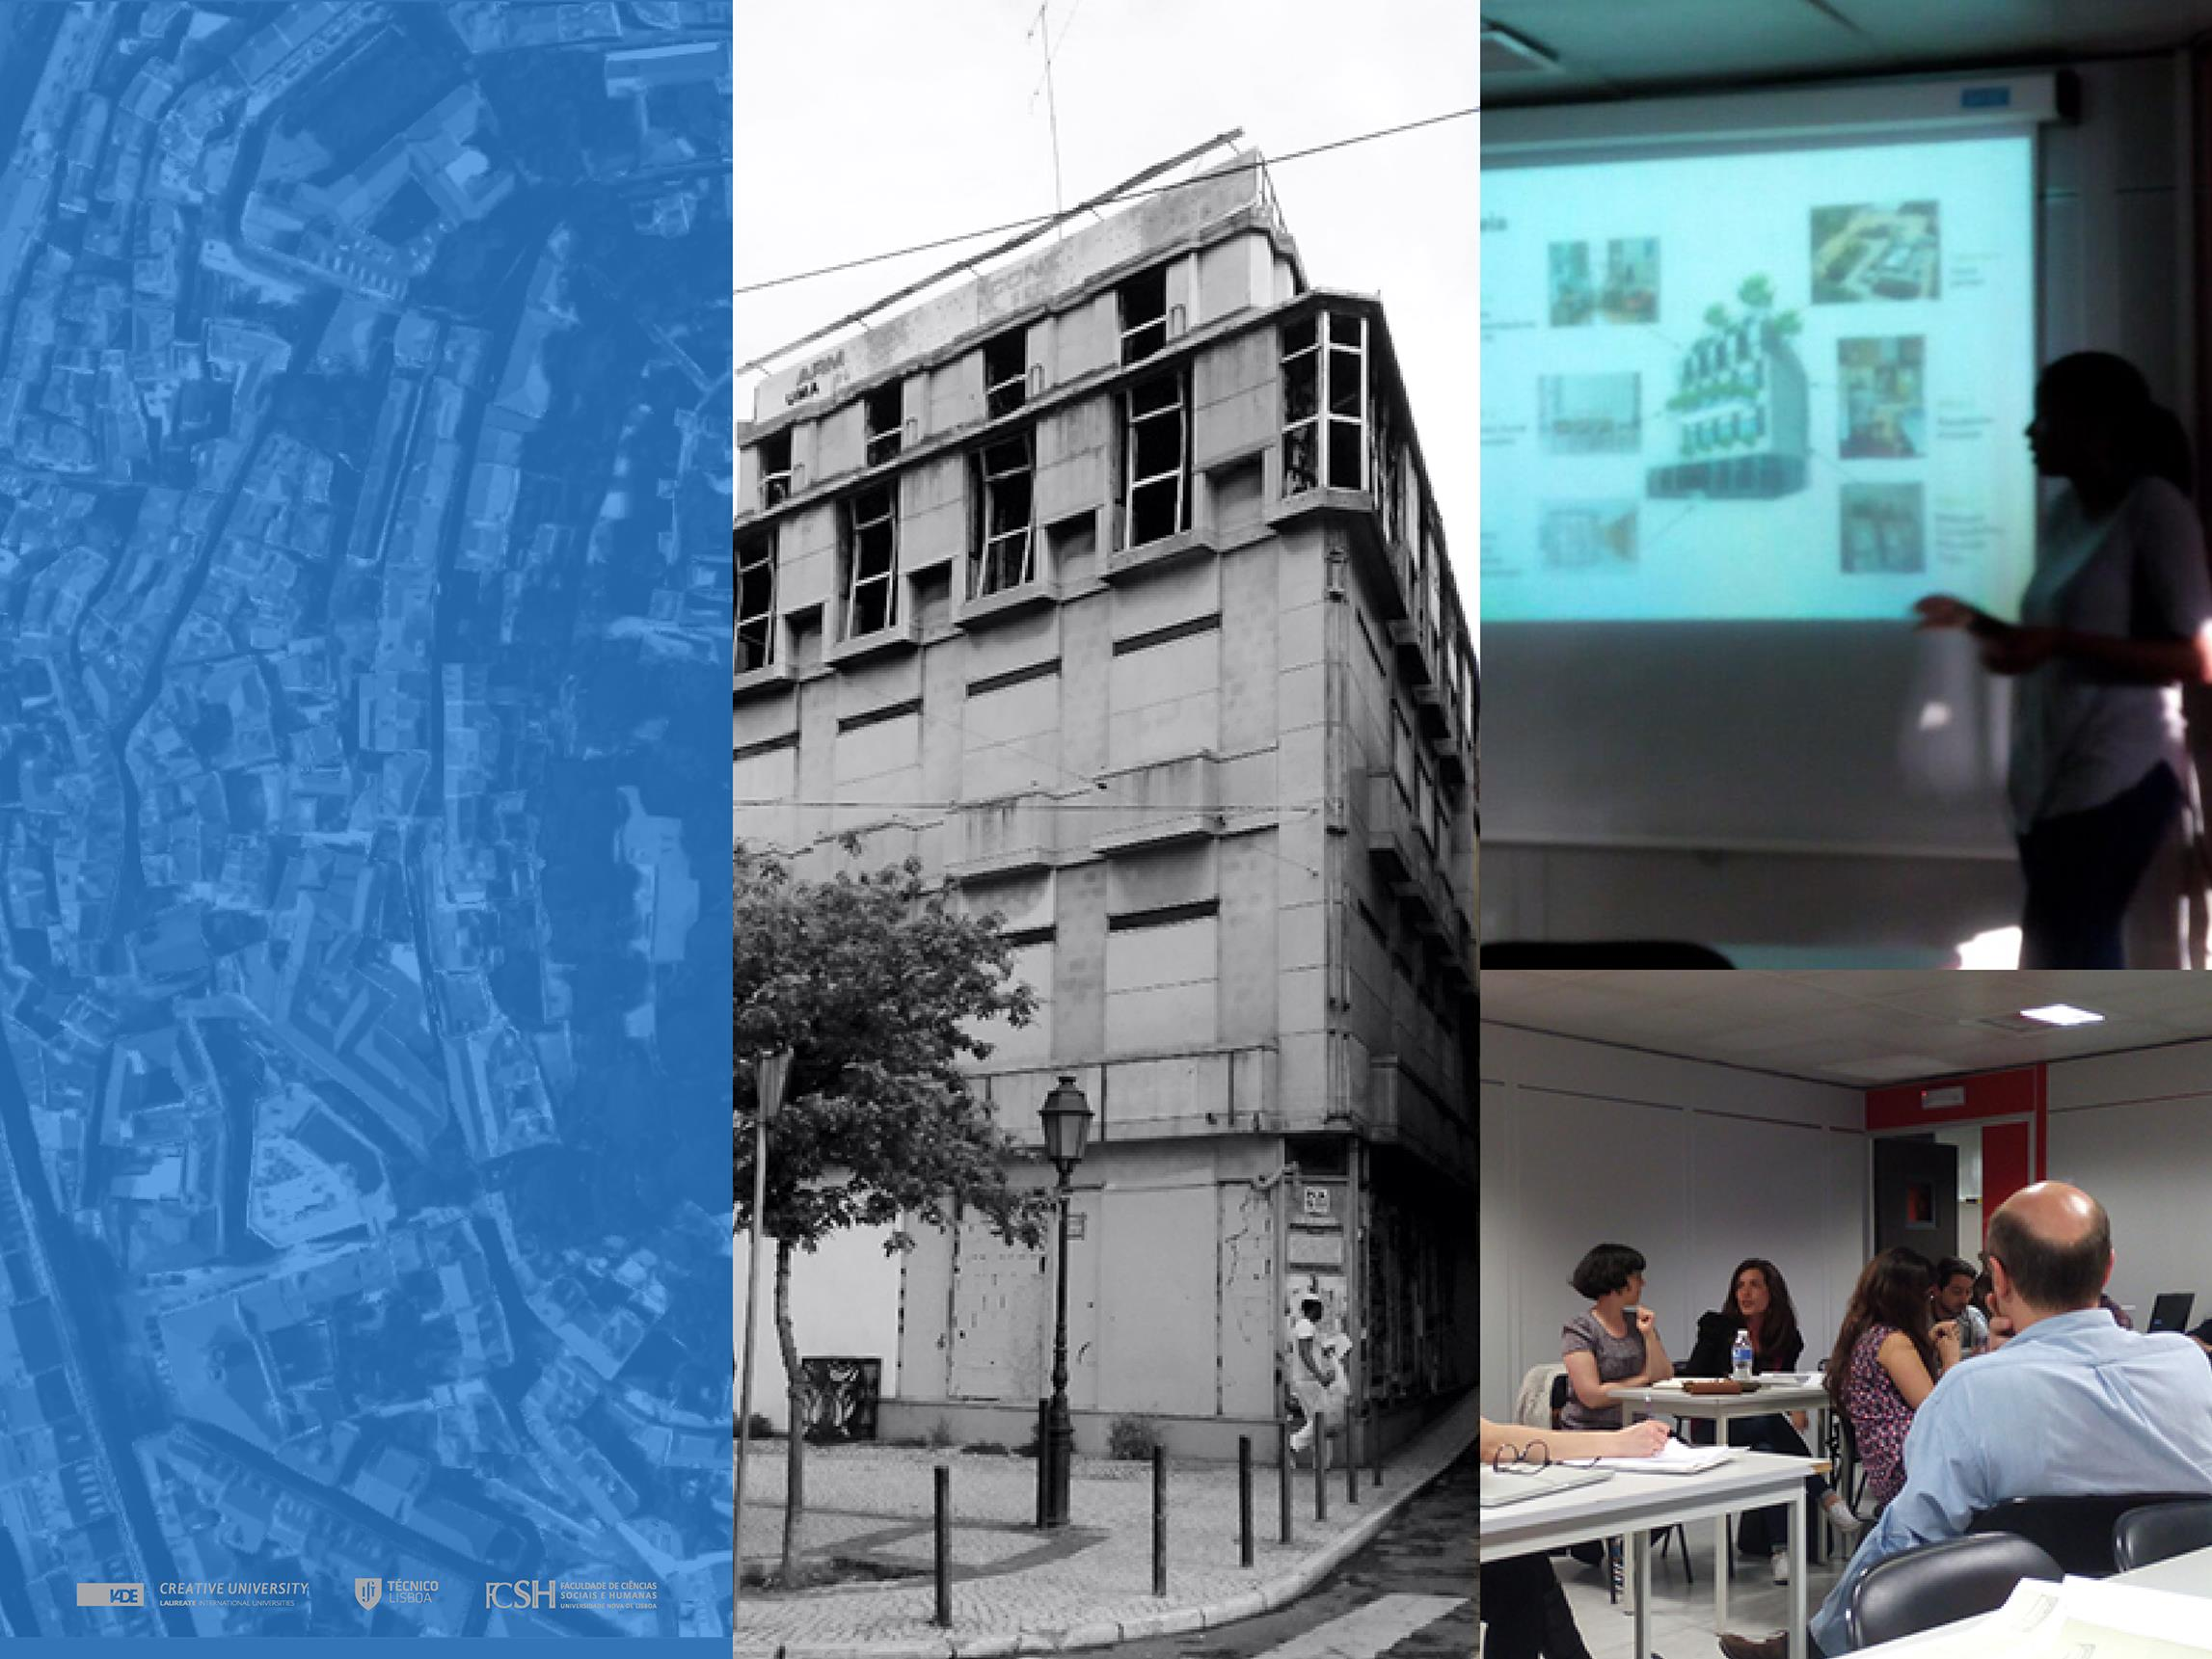 Curso DESIGN AMBIENTES Professor Nuno Vidigal Resumo: O ponto de intervenção foi um prédio abandonado, localizado no Largo Conde Barão.